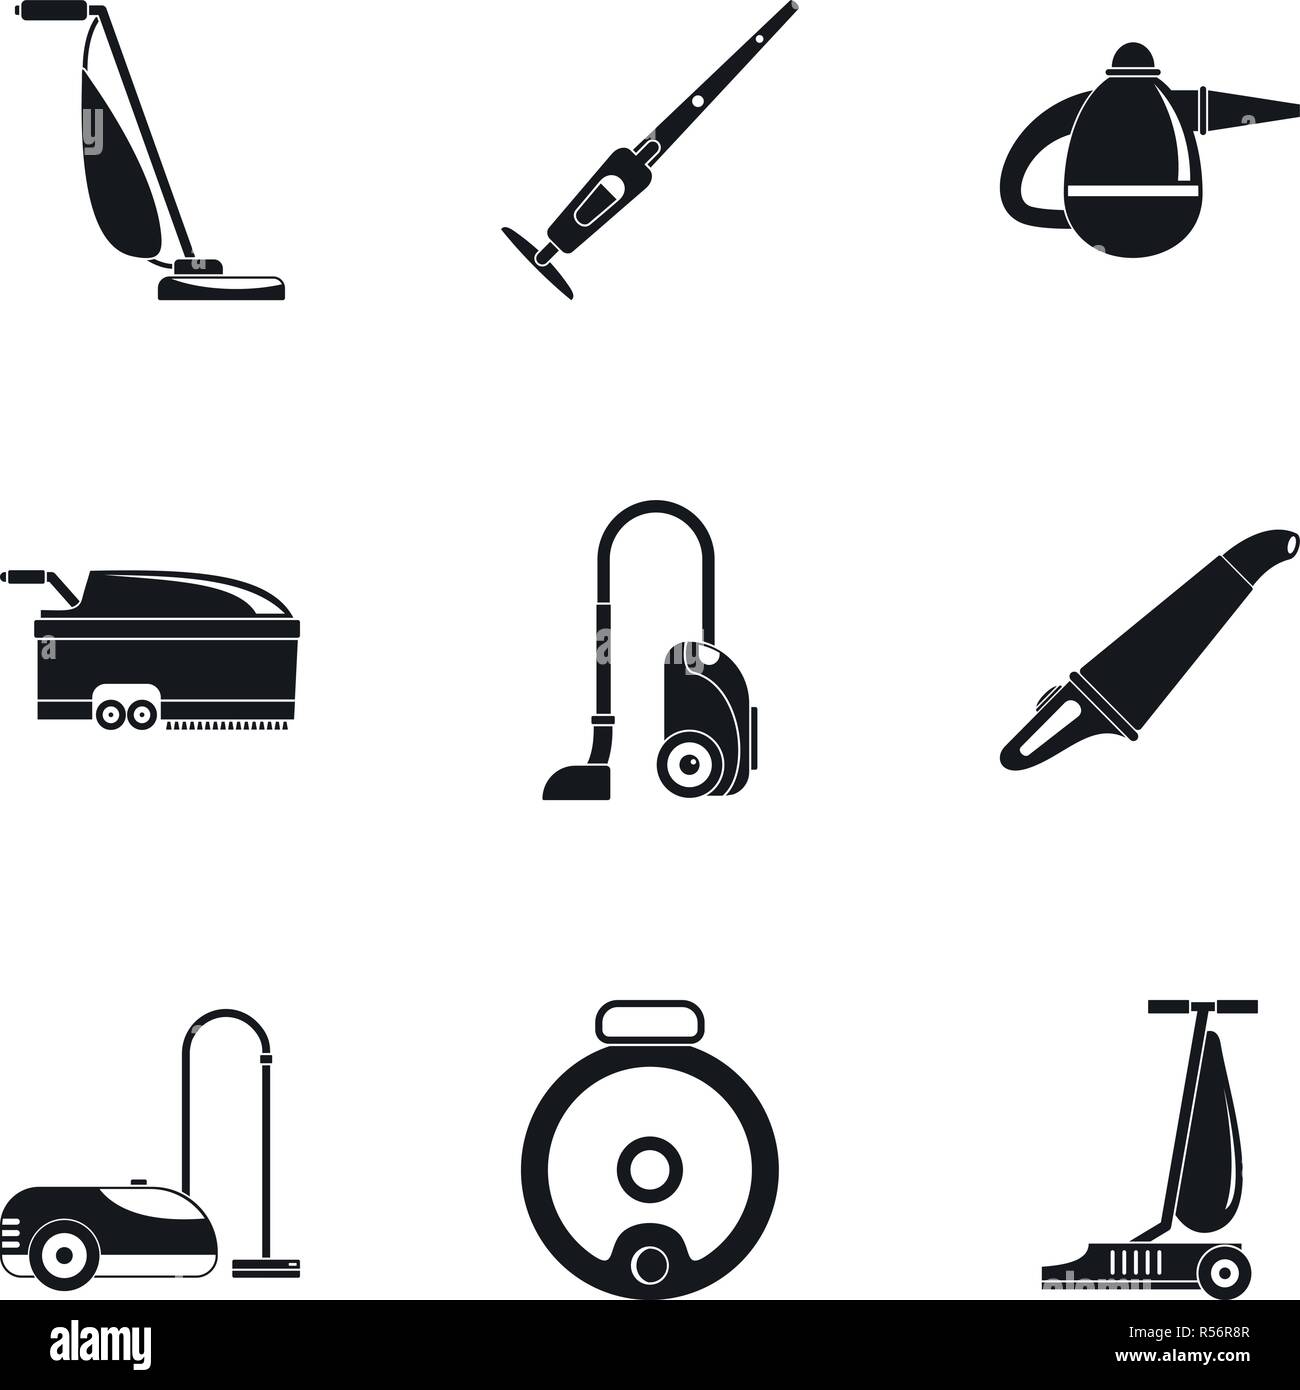 Aspirateur moderne icon set. Simple jeu d'aspirateur moderne 9 icônes  vectorielles pour le web design sur fond blanc Image Vectorielle Stock -  Alamy